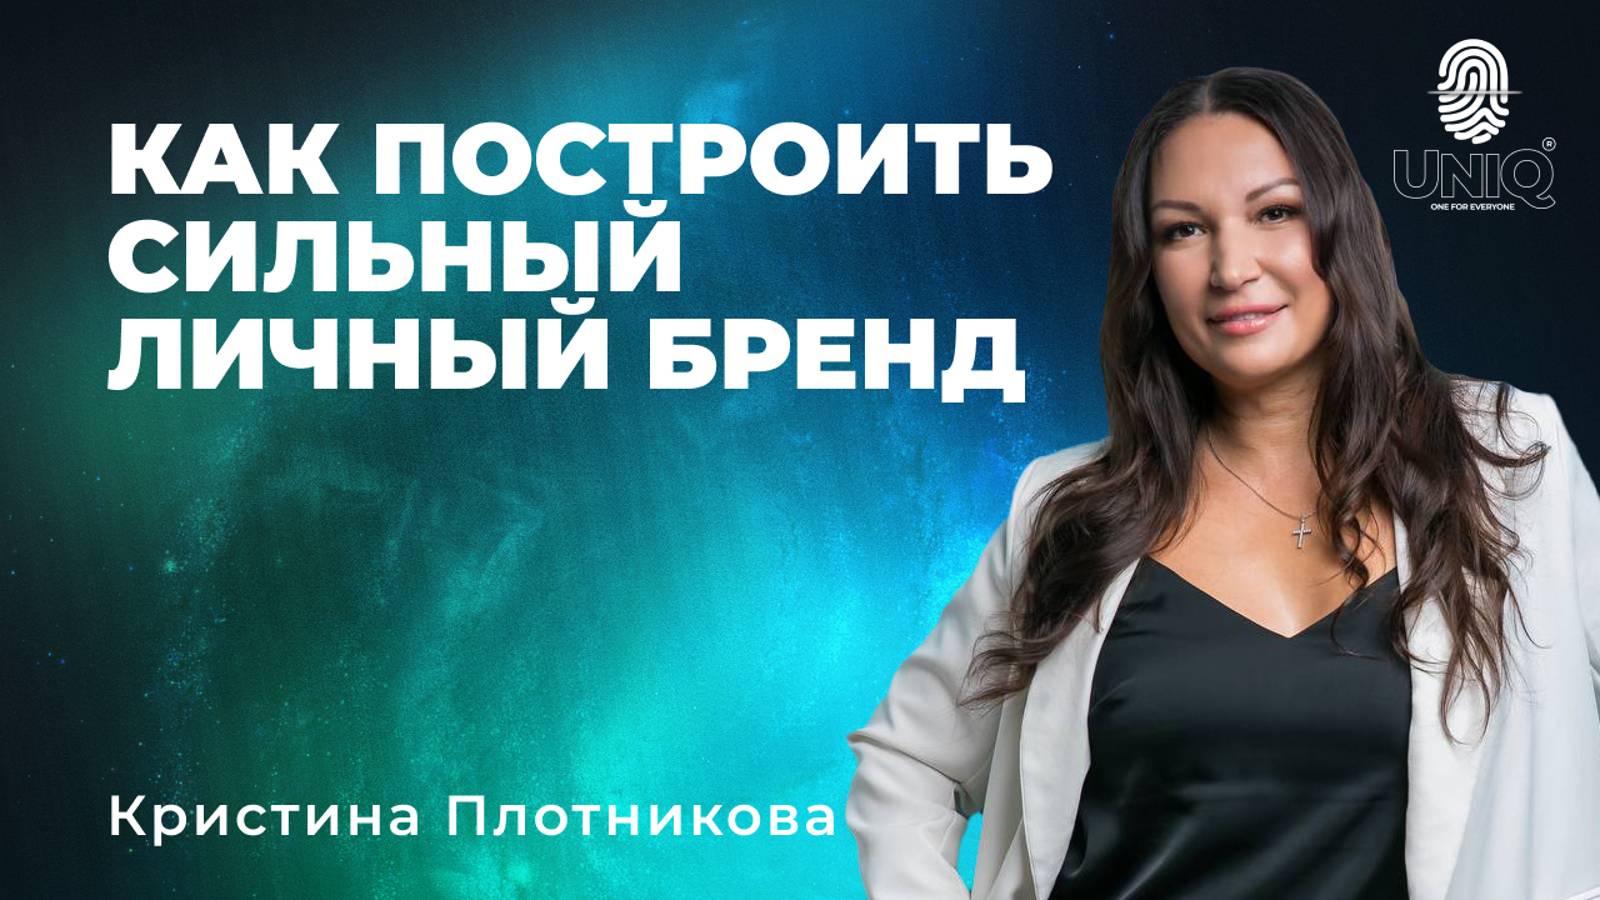 Кристина Плотникова "Как построить сильный личный бренд"